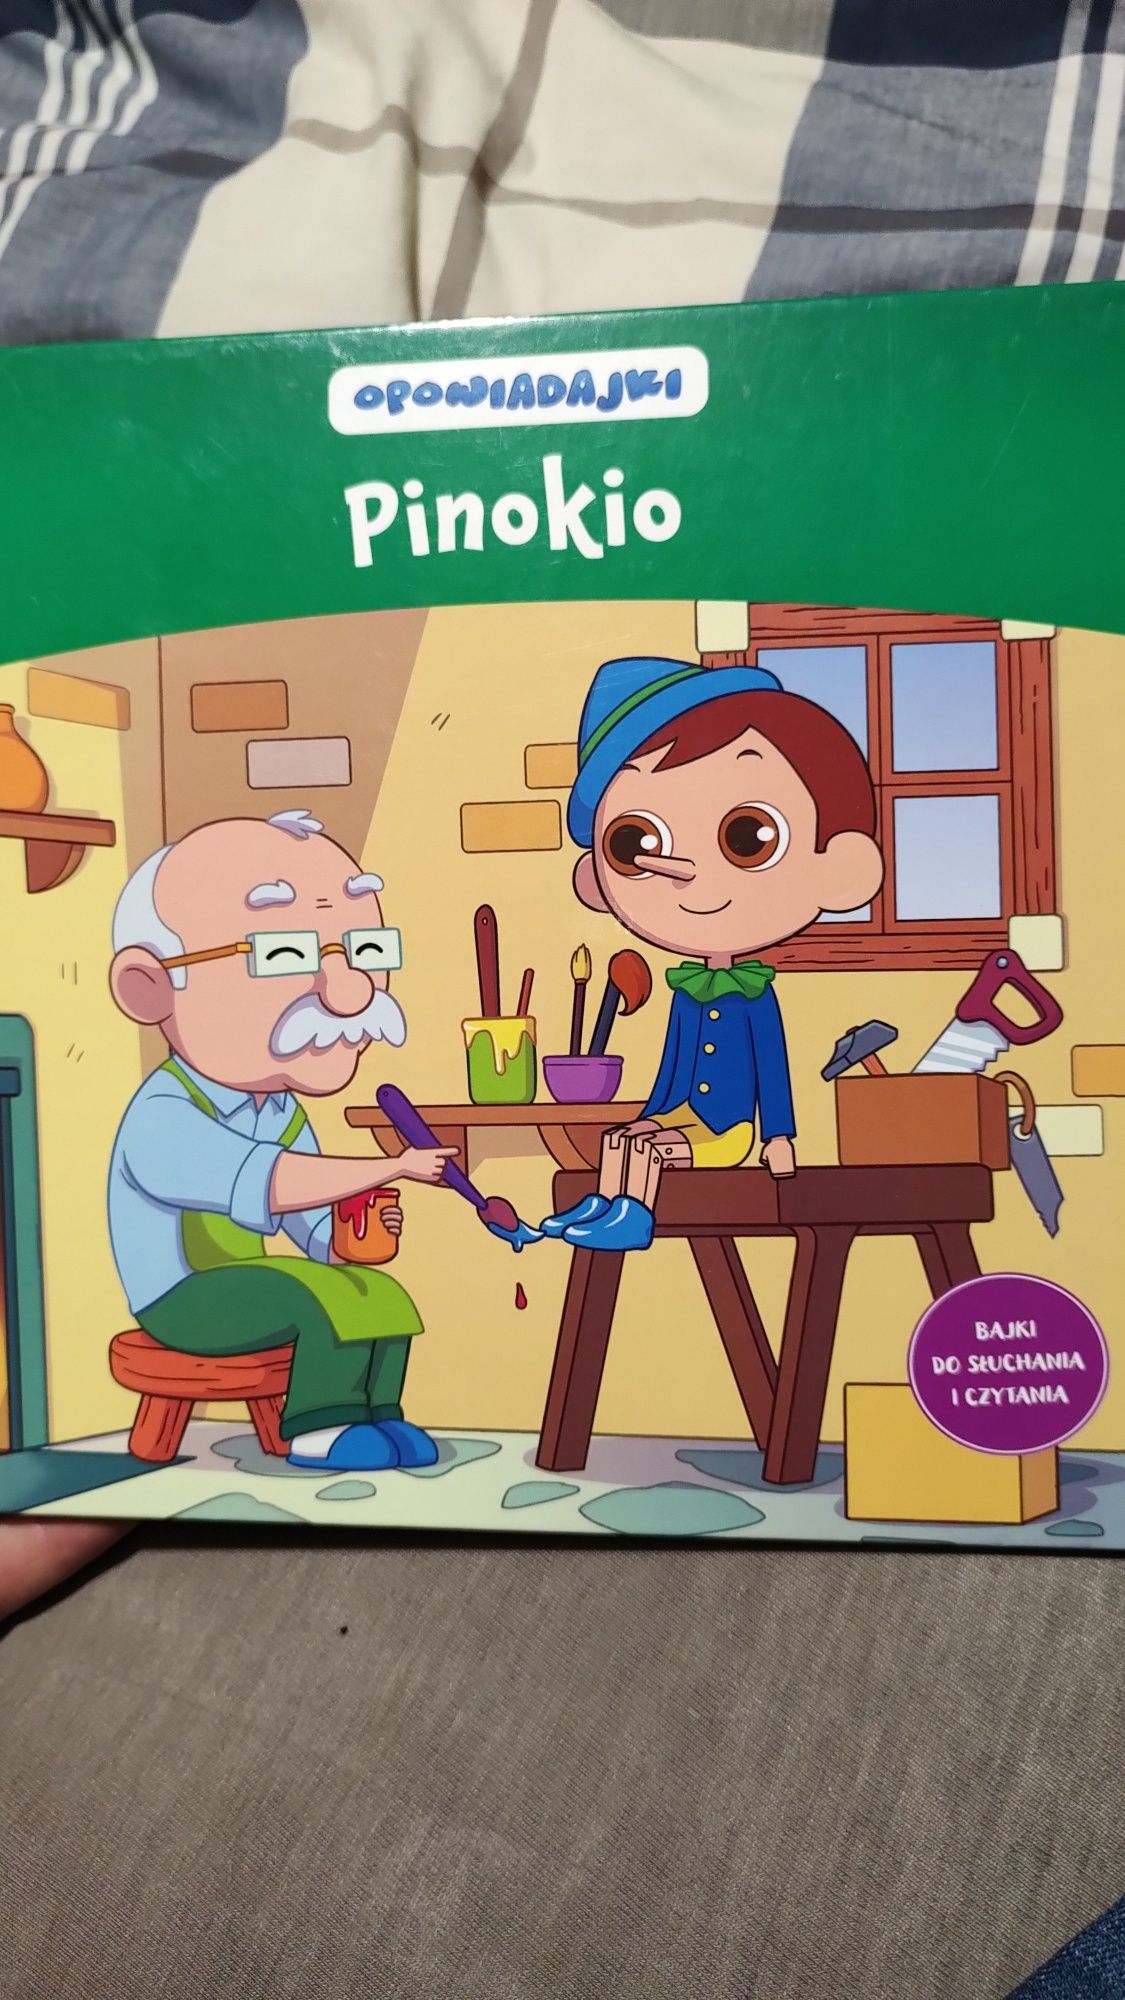 Opowiadali Pinokio kolekcja hachette